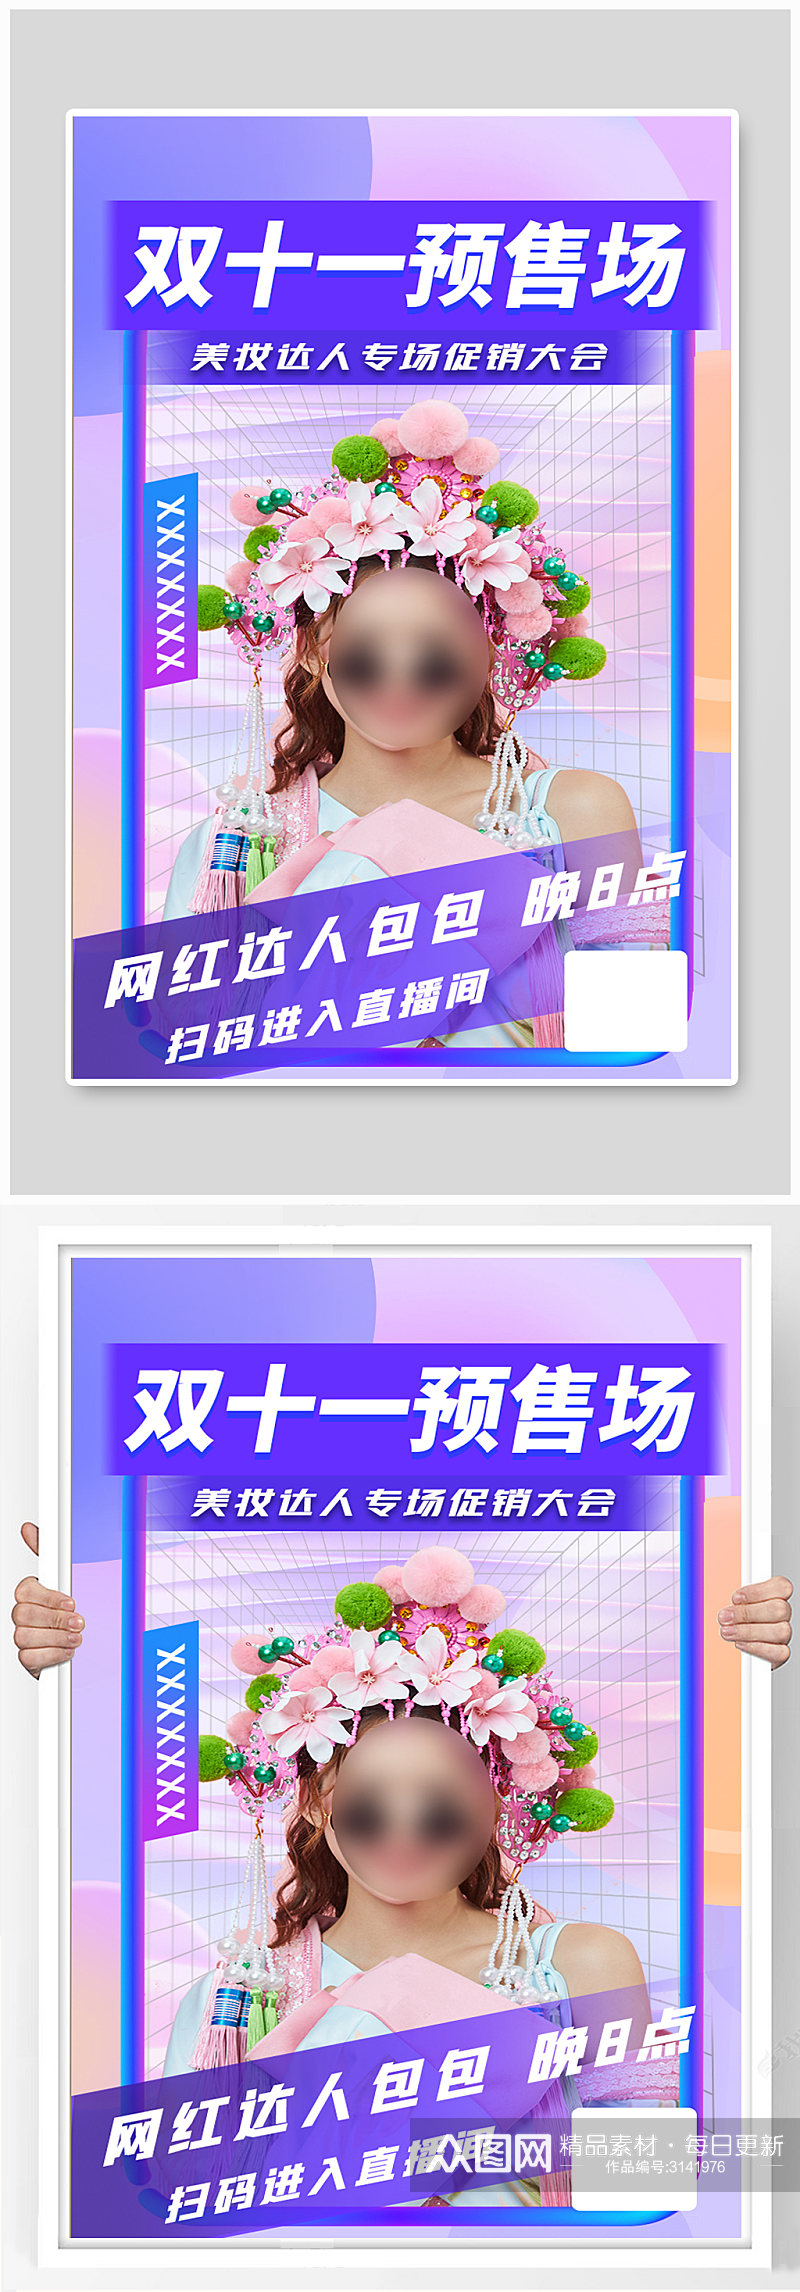 双十一炫彩紫色电商预售促销美妆直播海报素材